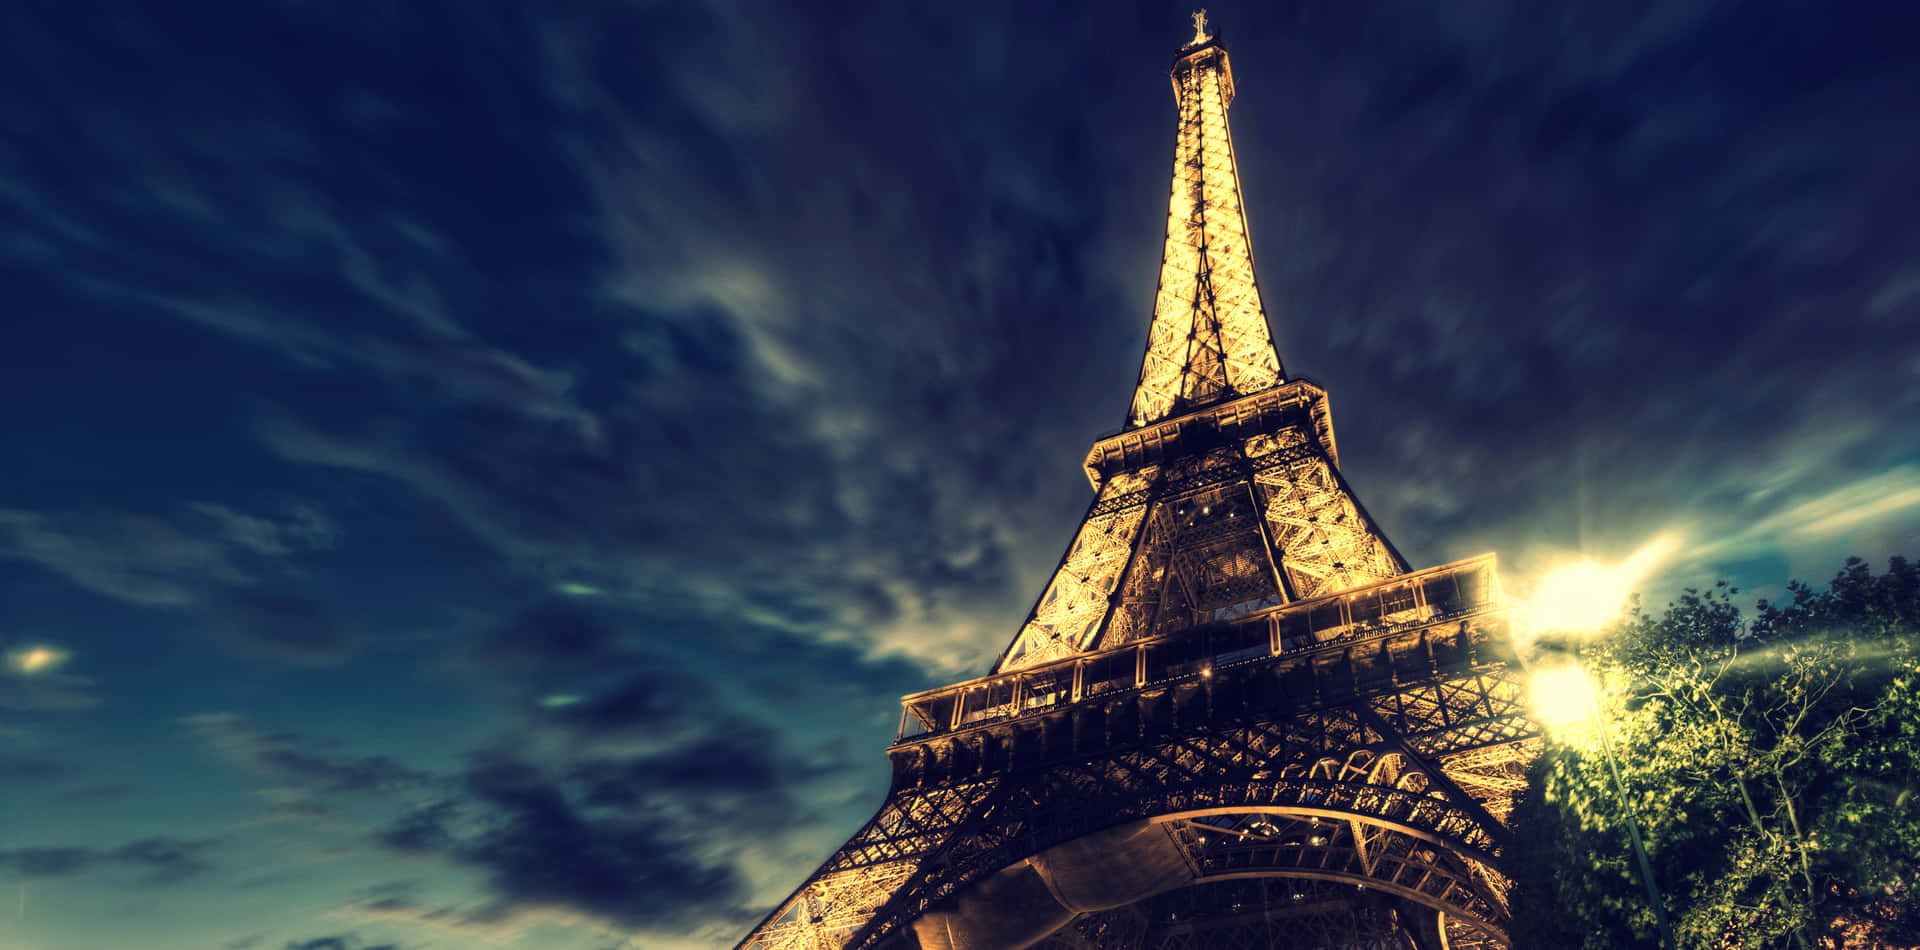 Paisagemda Torre Eiffel À Noite Em Imagem De Fundo Para Computador Ou Celular.